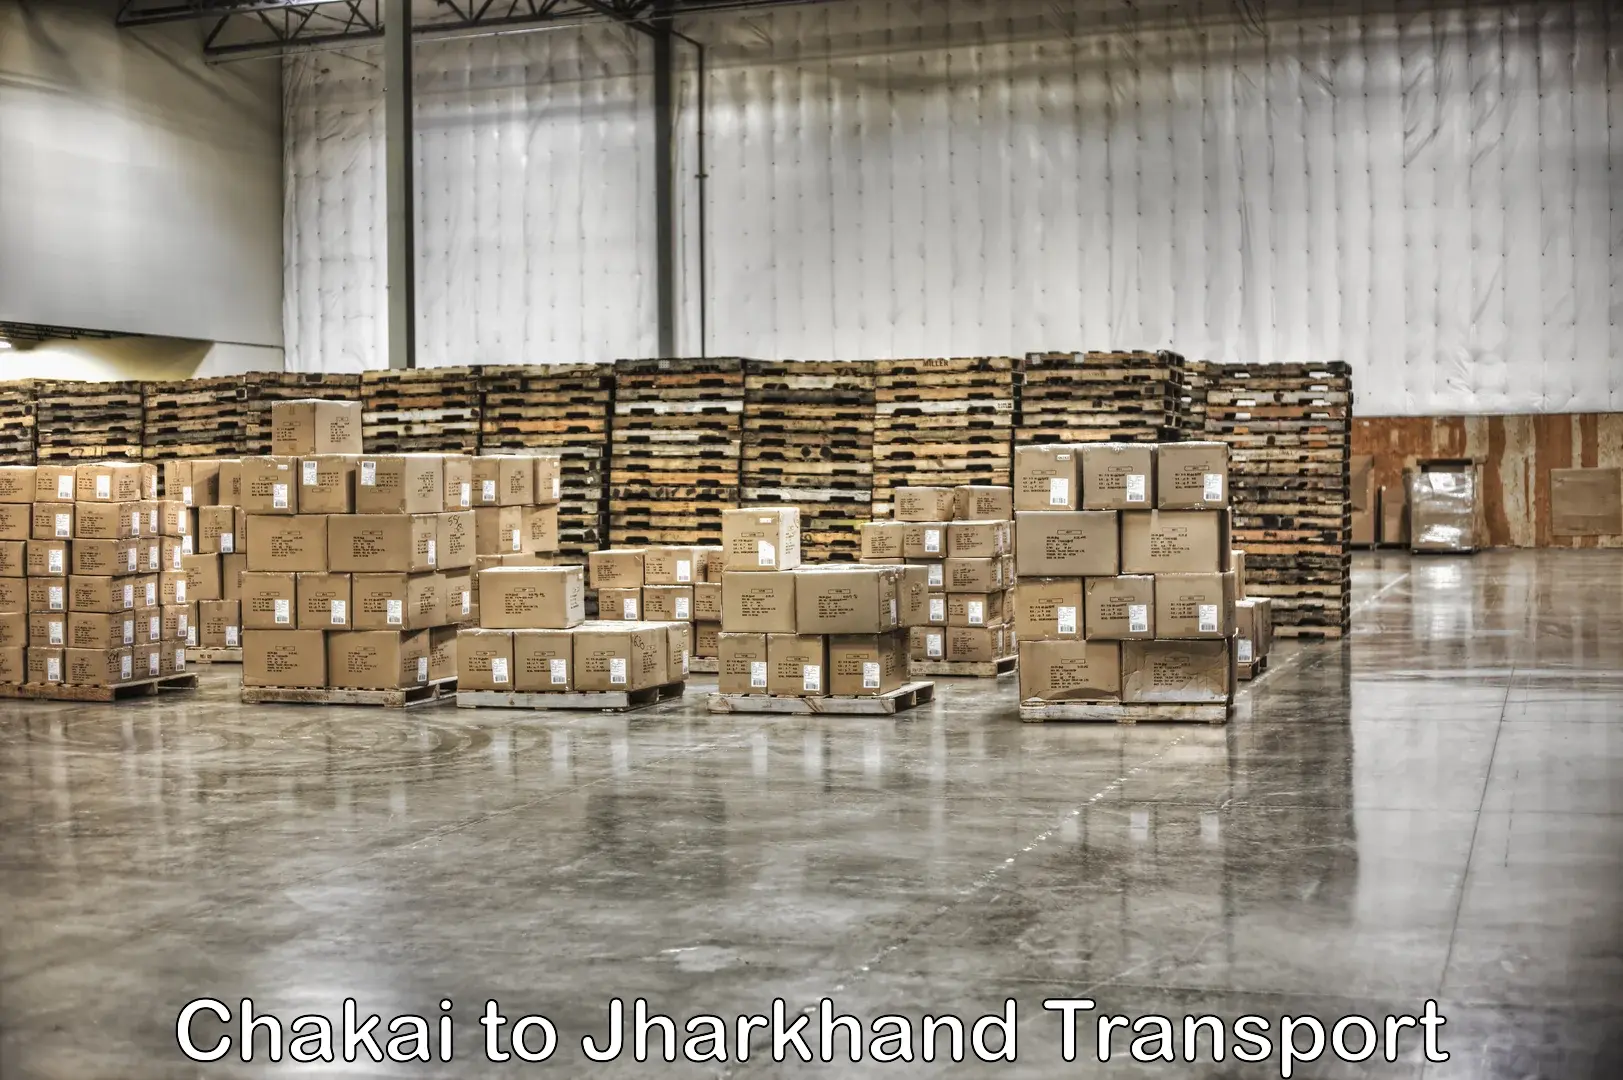 Truck transport companies in India Chakai to Chandwa